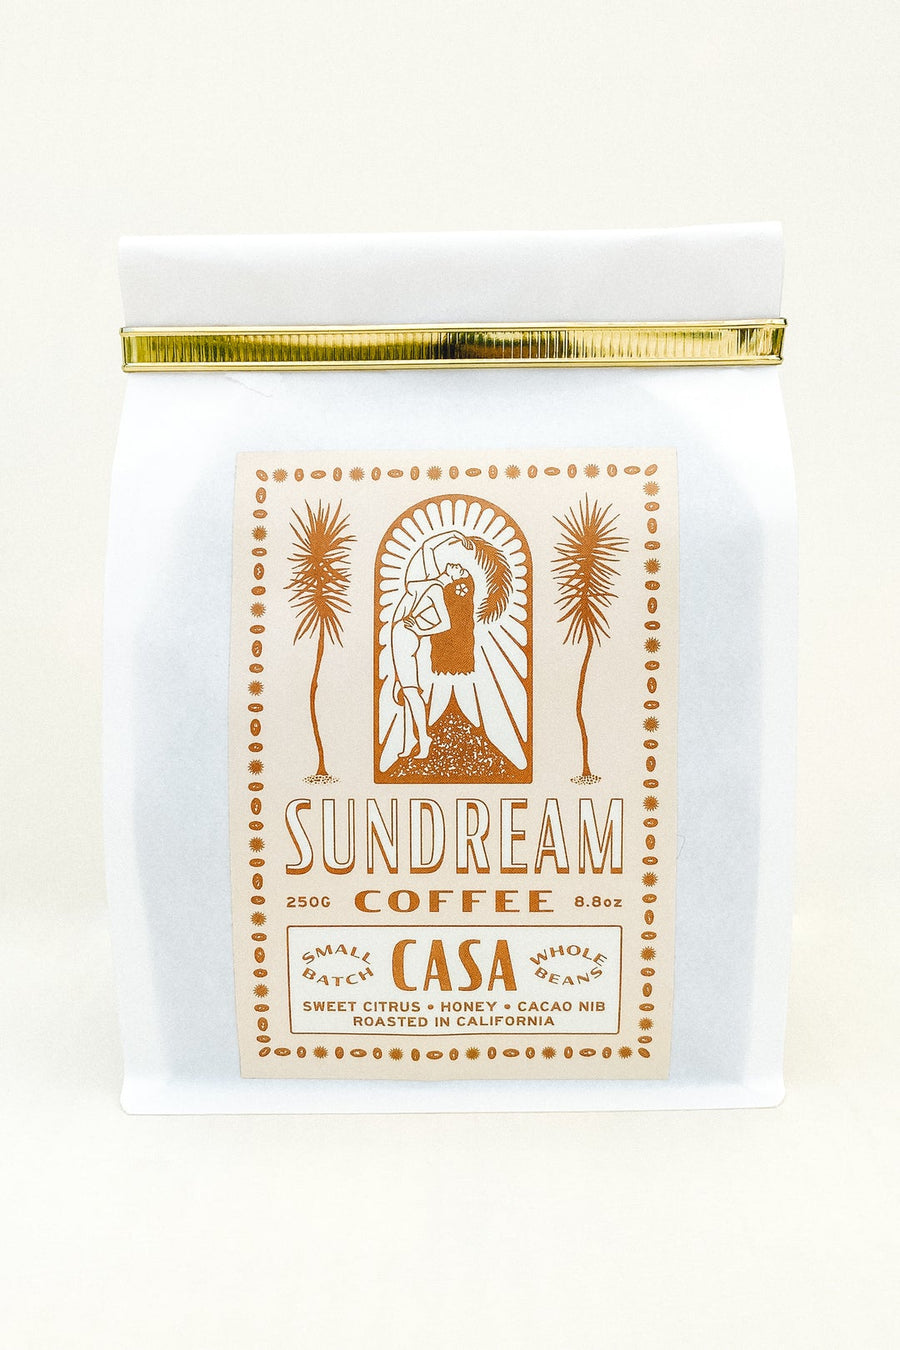 Sundream Coffee - Casa Blend